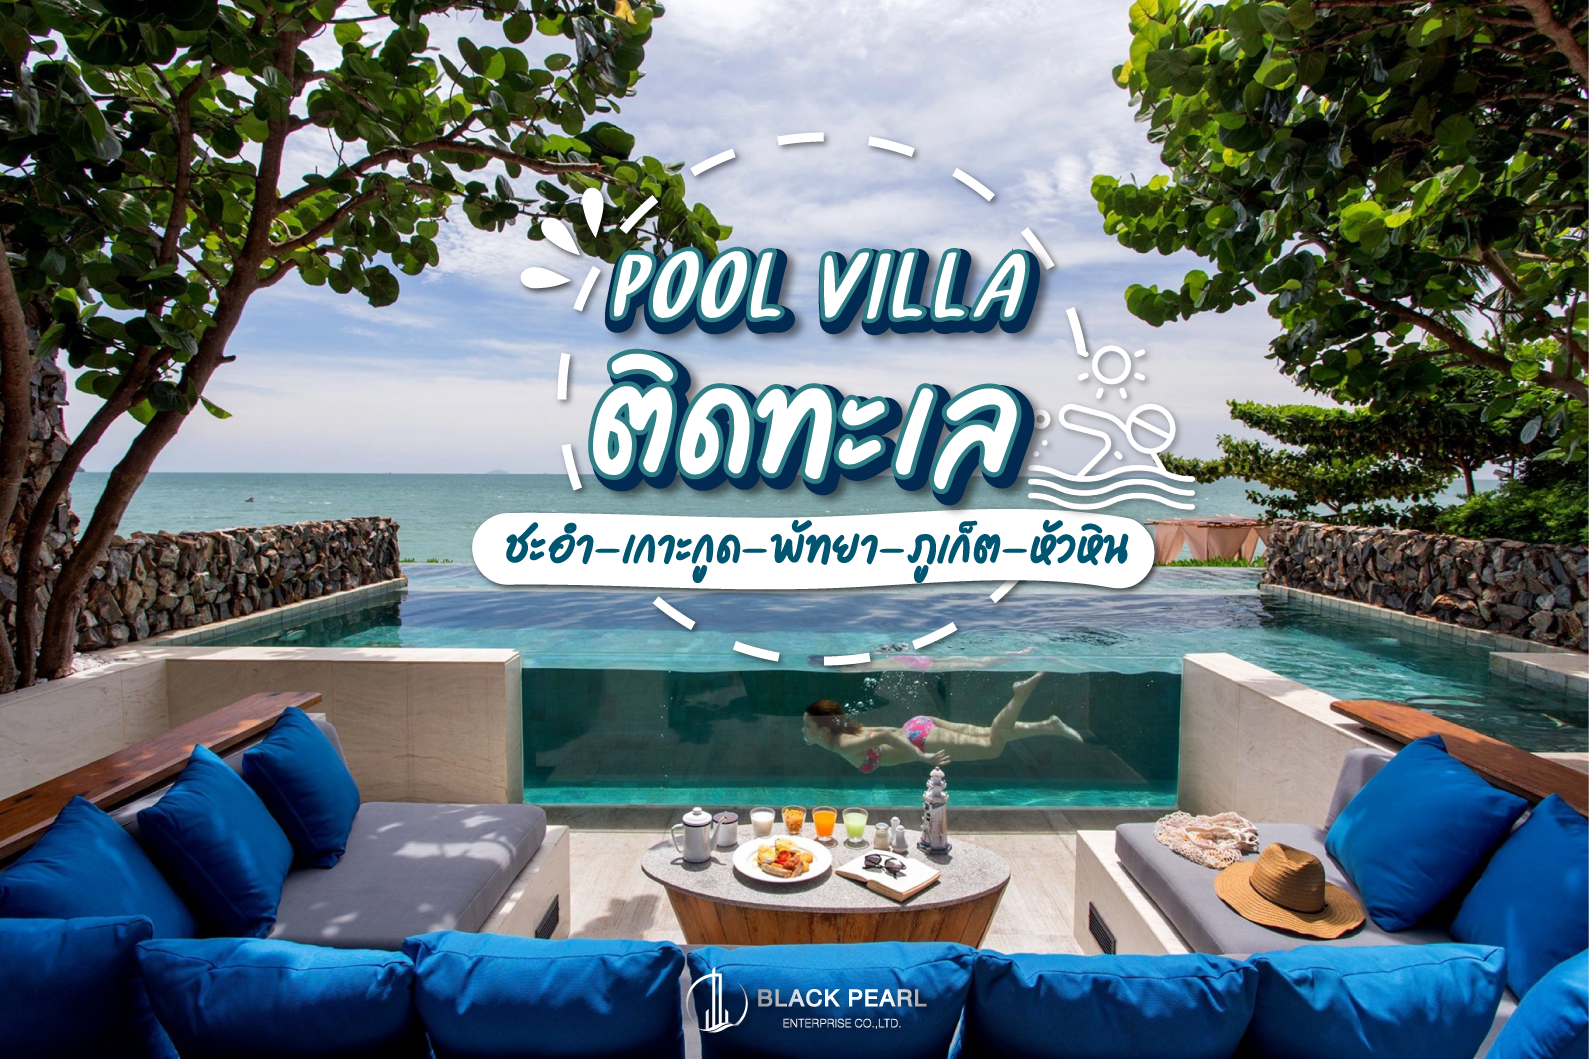 Pool villa ติดทะเล พักผ่อนในวันหยุดยาว กับบรรยากาศของธรรมชาติ